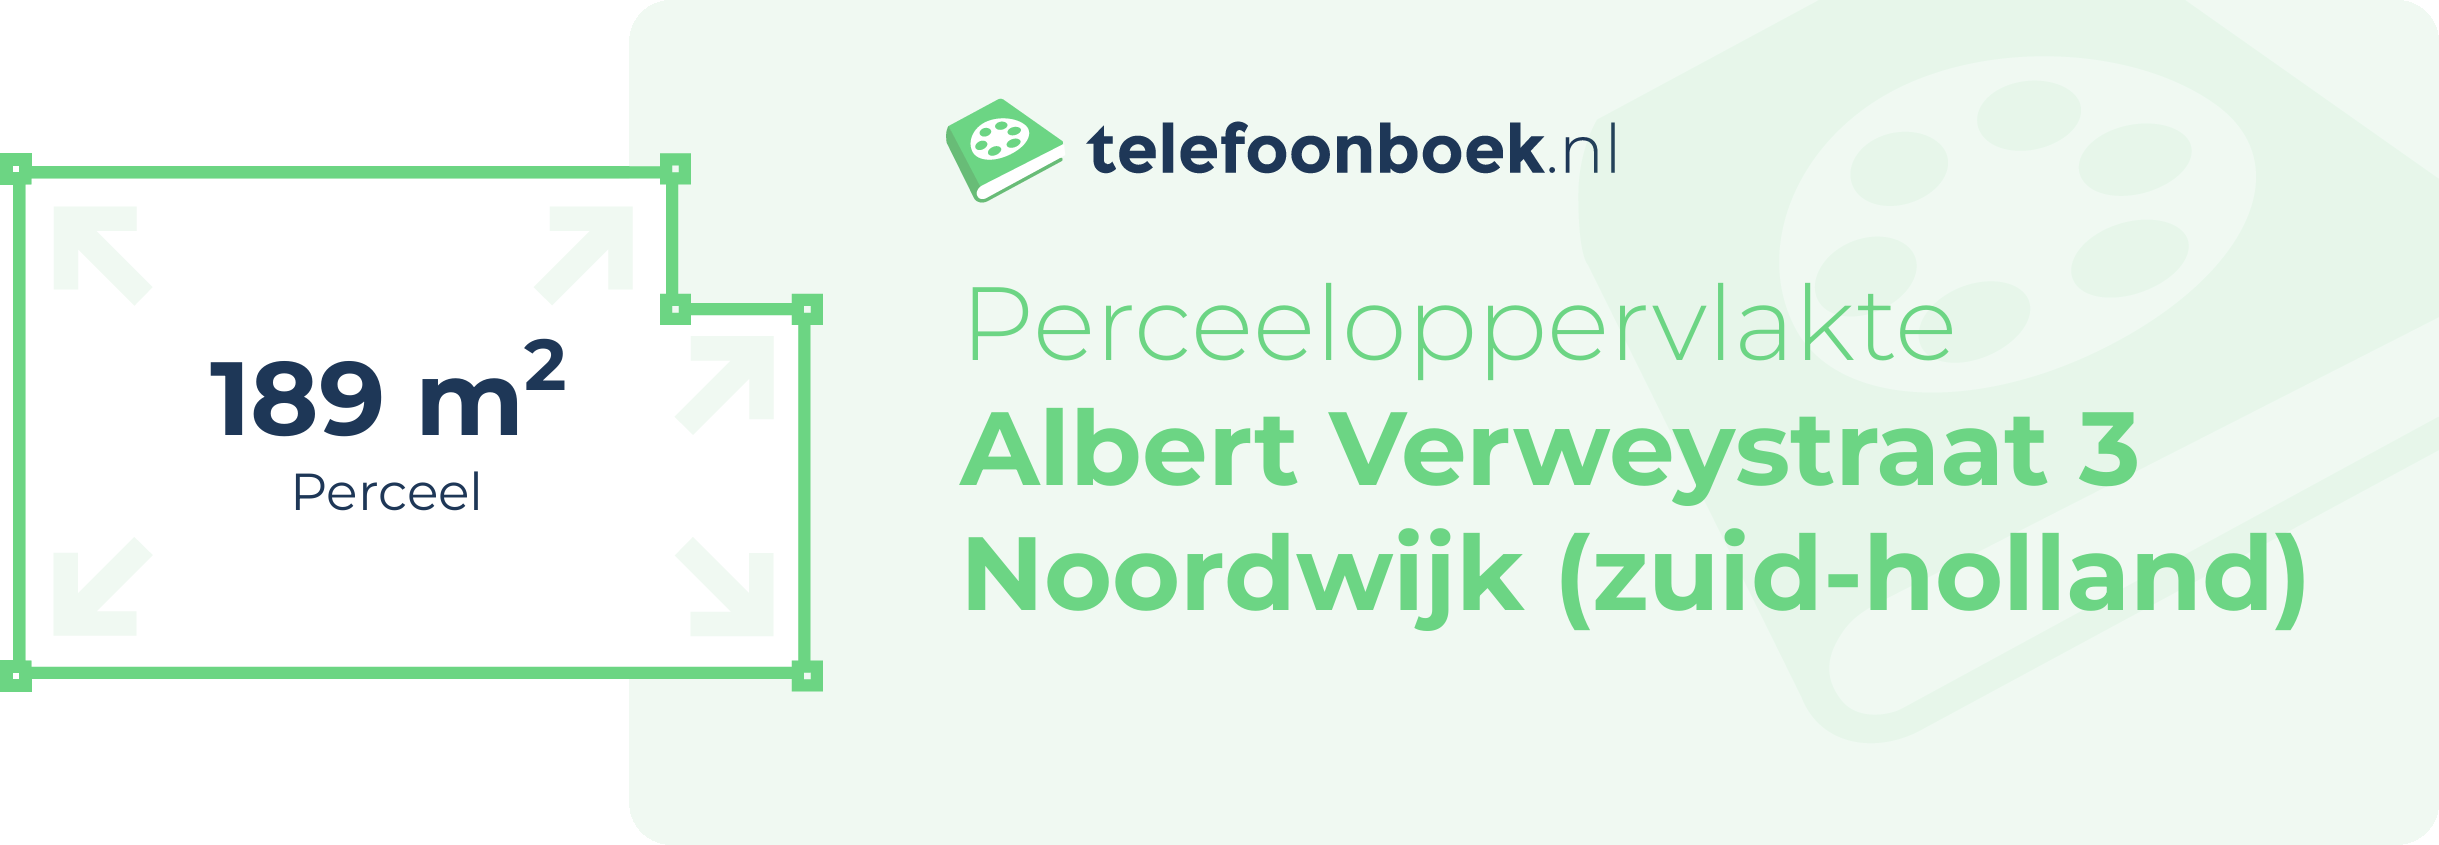 Perceeloppervlakte Albert Verweystraat 3 Noordwijk (Zuid-Holland)